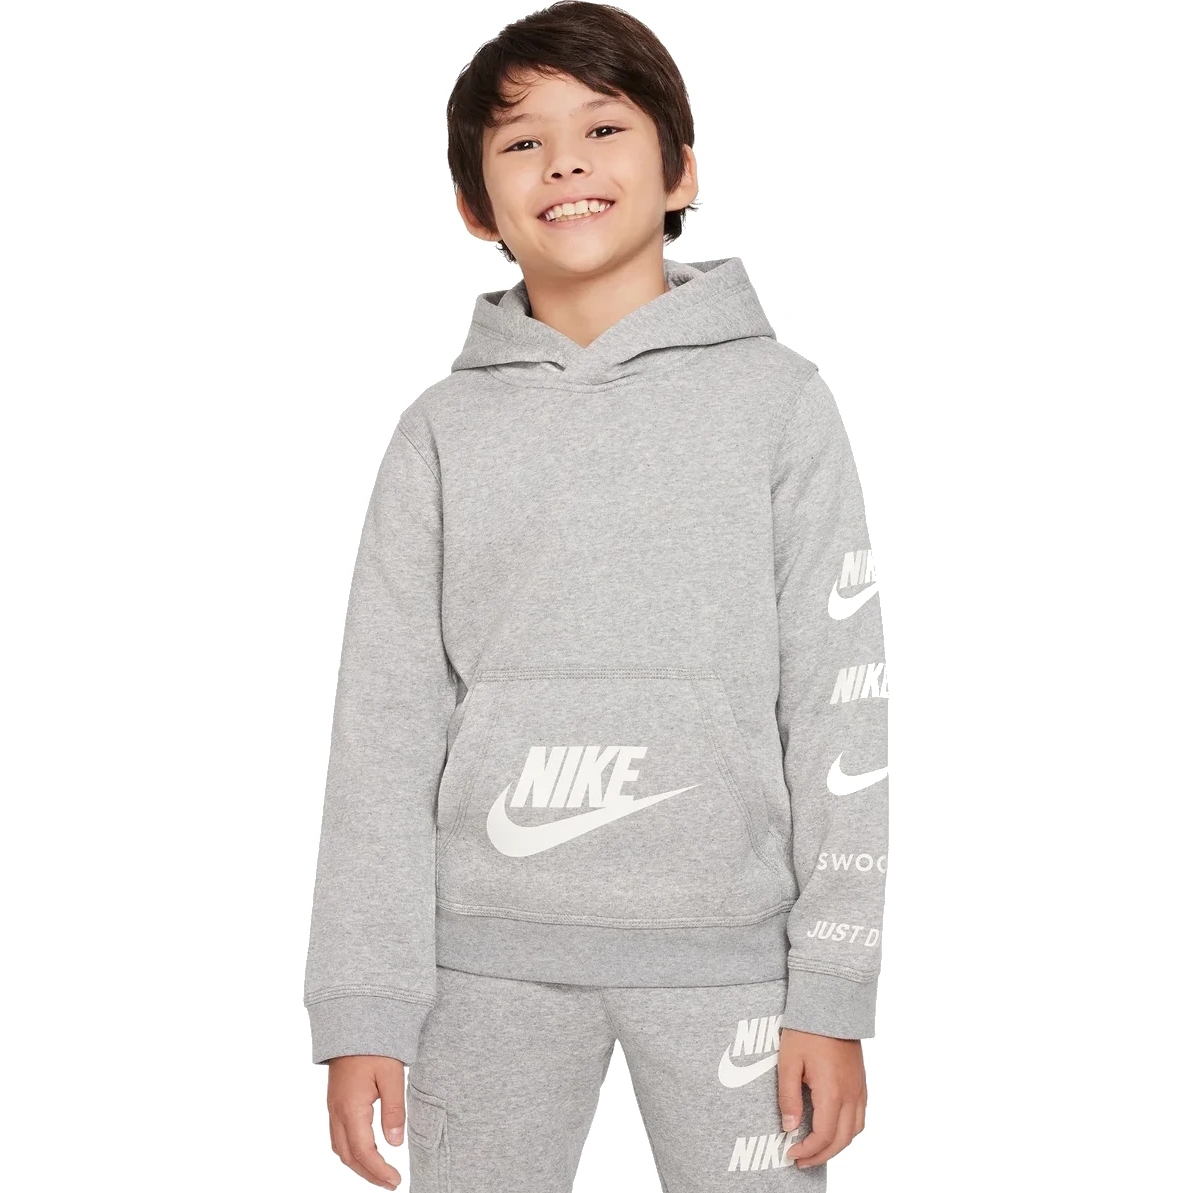 Produktbild von Nike Sportswear Standard Issue Fleece-Hoodie für ältere Kinder - dark grey heather FN7724-063